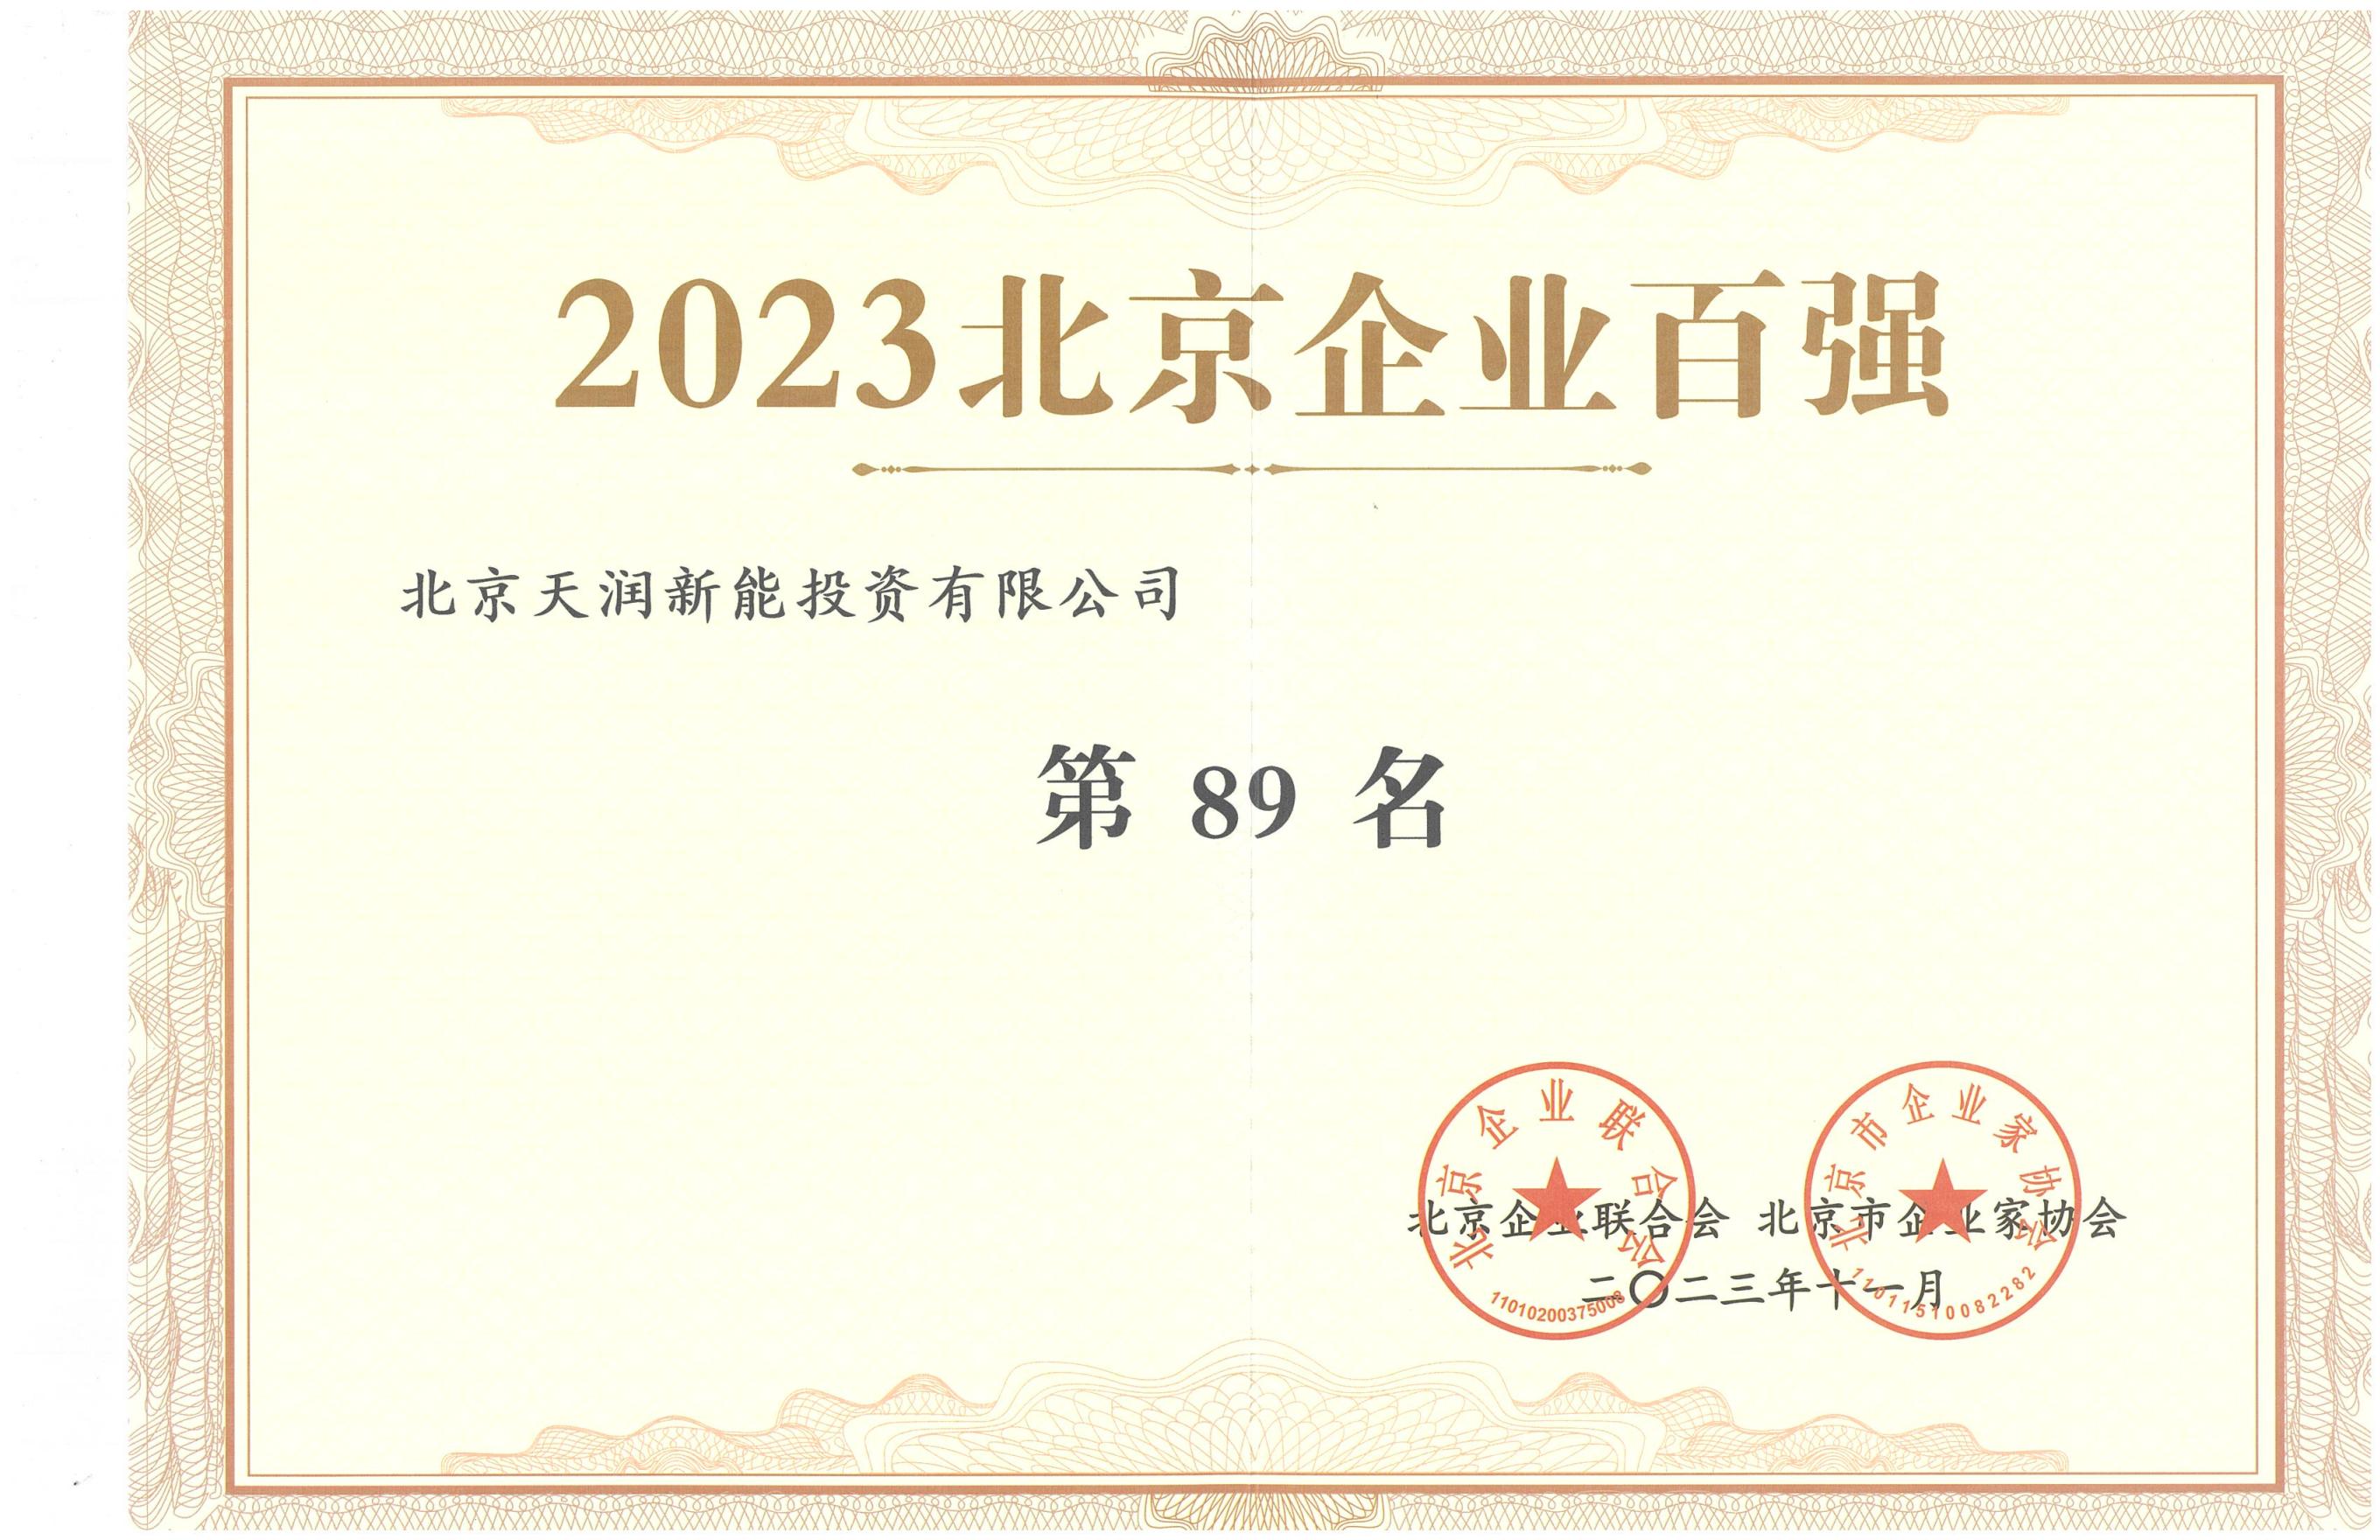 2023北京企业百强